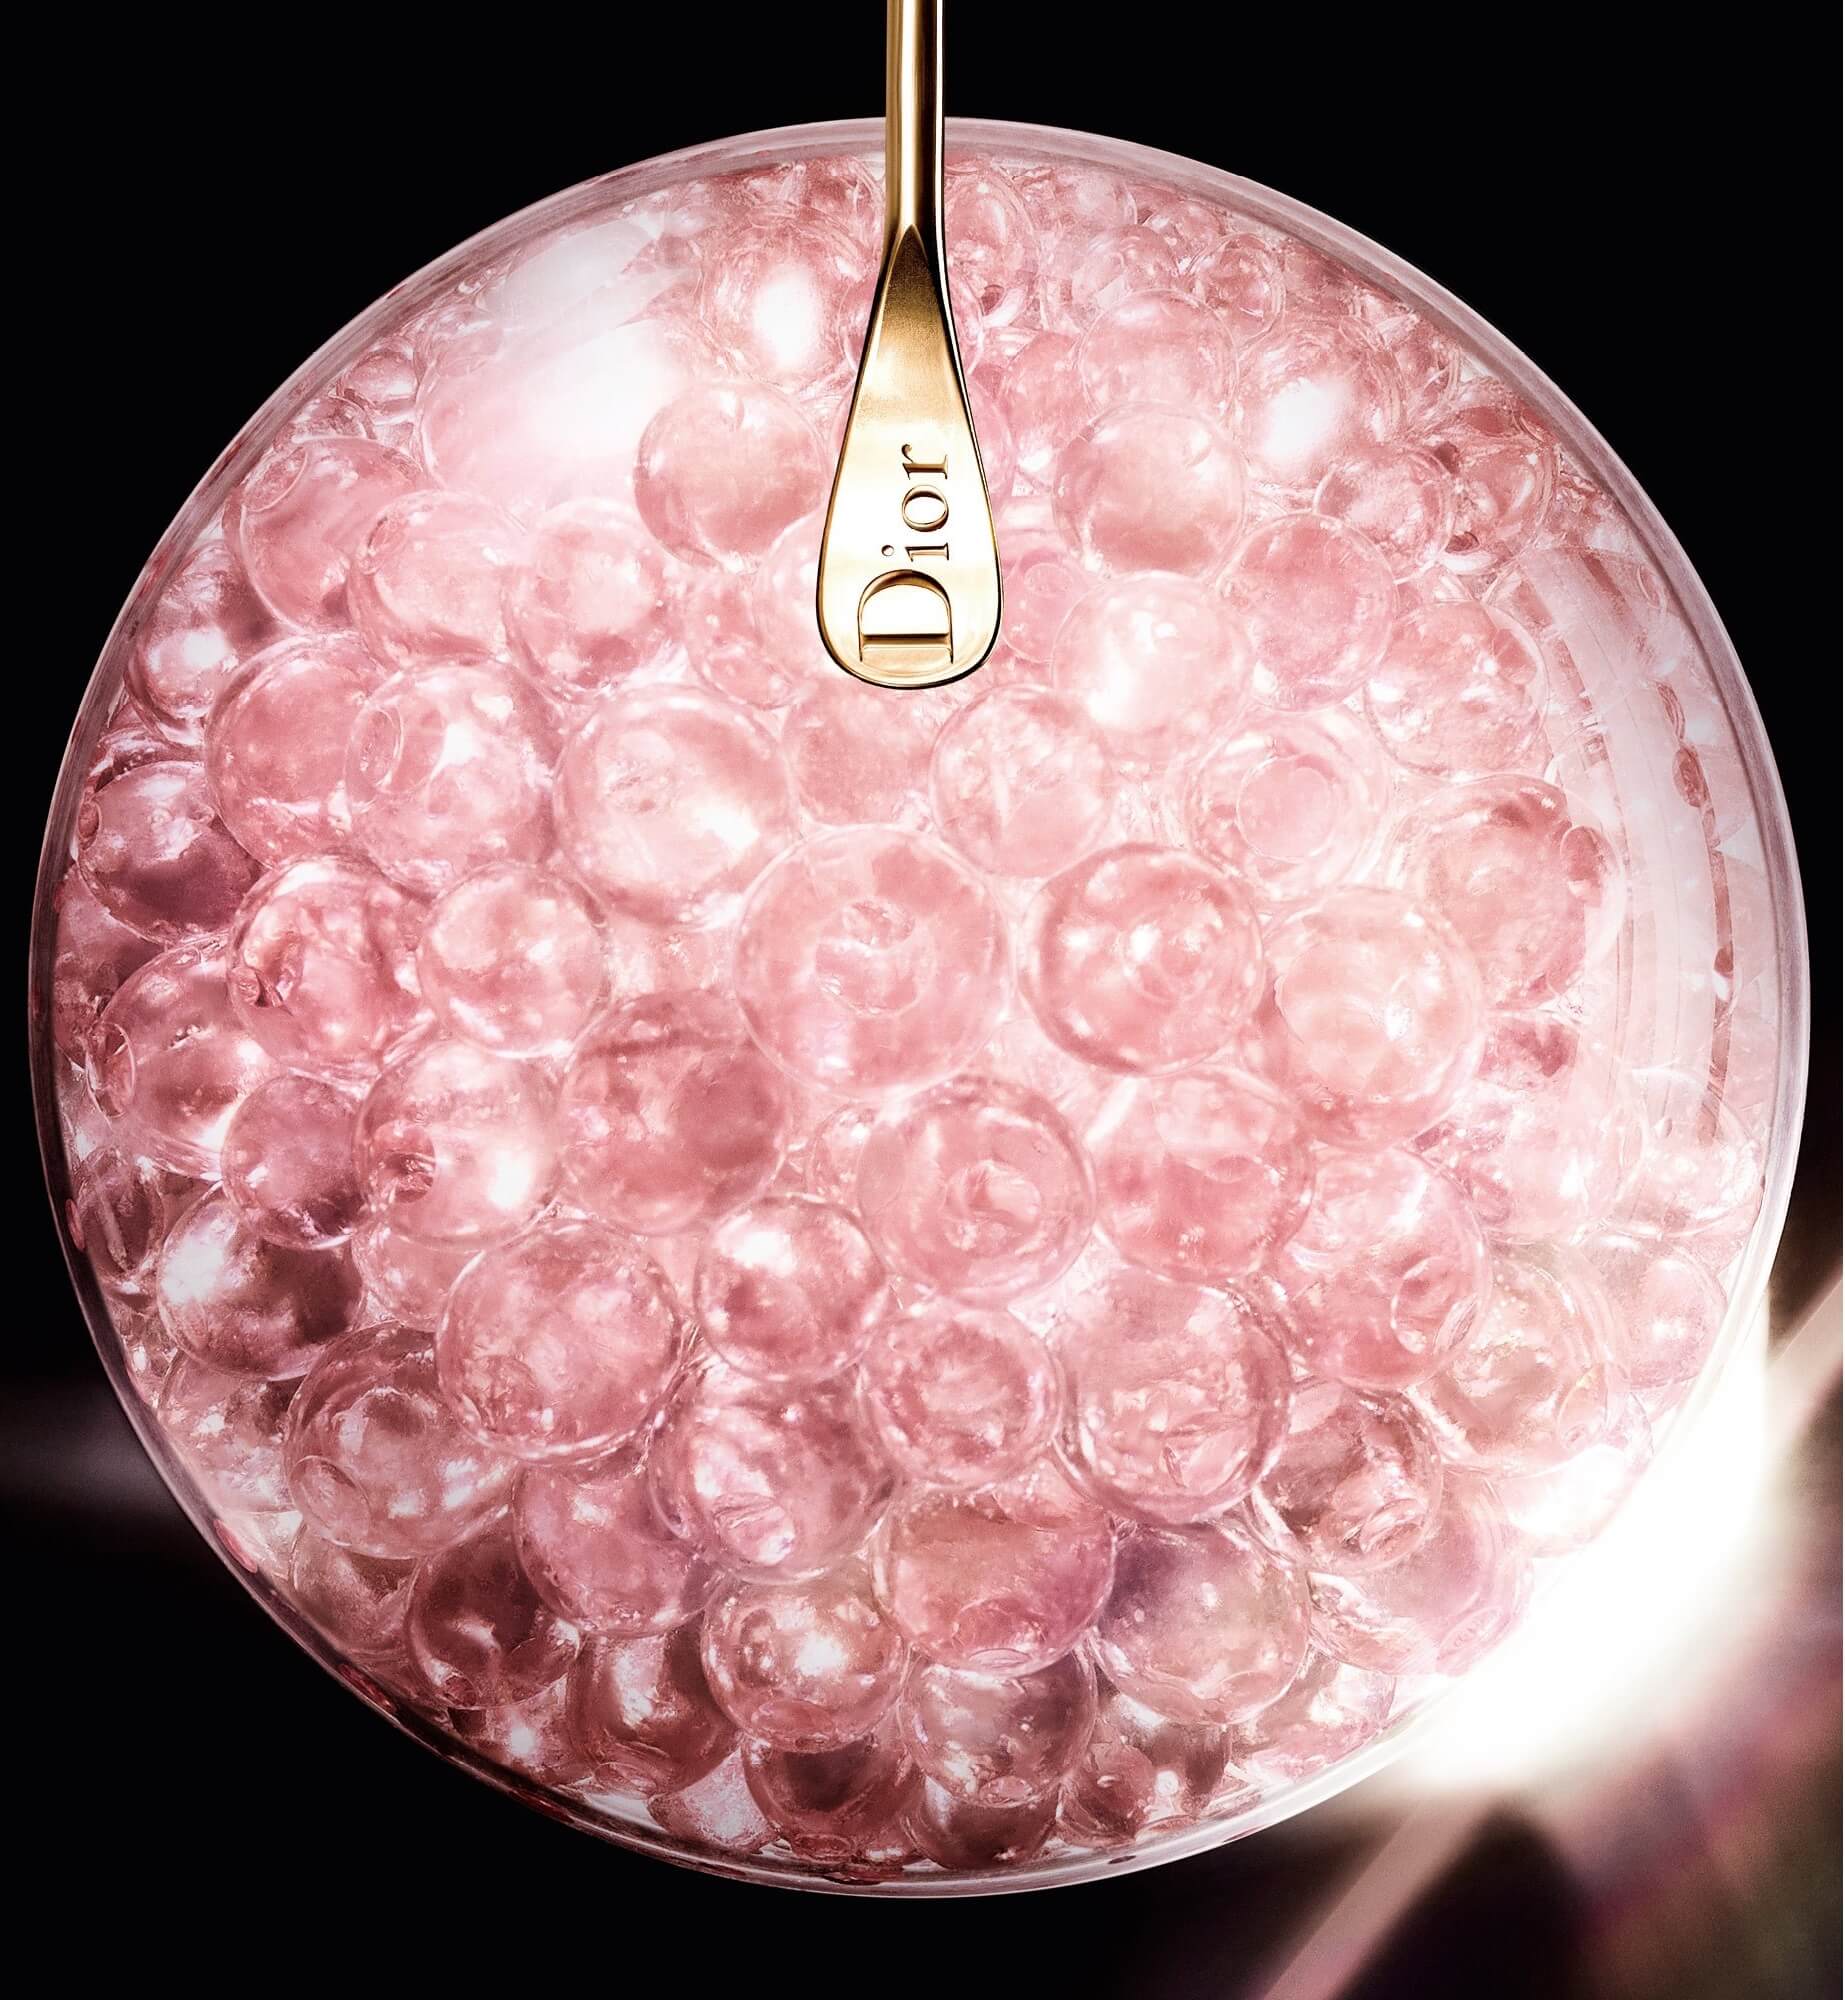 Dior Prestige La Micro - Huile De Rose  สารอาหารขนาดไมโครจิ๋ว 20 ชนิดที่จำเป็นต่อผิว รวมถึงแร่ธาตุต่างๆ เกลือแร่ โอเมก้า 3 วิตามินอี ตรงเข้าฟื้นบำรุงผิวอย่างล้ำลึก   พิเศษยิ่งกว่าคือในแต่ละขวดเต็มไปด้วยอณูแค็ปซูลทรงกลมไข่มุก หรือ Rose Micro Pearls กว่า 10,000 แค็ปซูล ซึ่งสกัดมาจากกุหลาบกรองวิลล์ ที่เป็นเอกสิทธิ์เฉพาะของ dior pretige ฟื้นบำรุงผิวให้แข็งแรง อิ่มเอิบ กระจ่างสดใส มีชีวิตชีวาอีกครั้ง